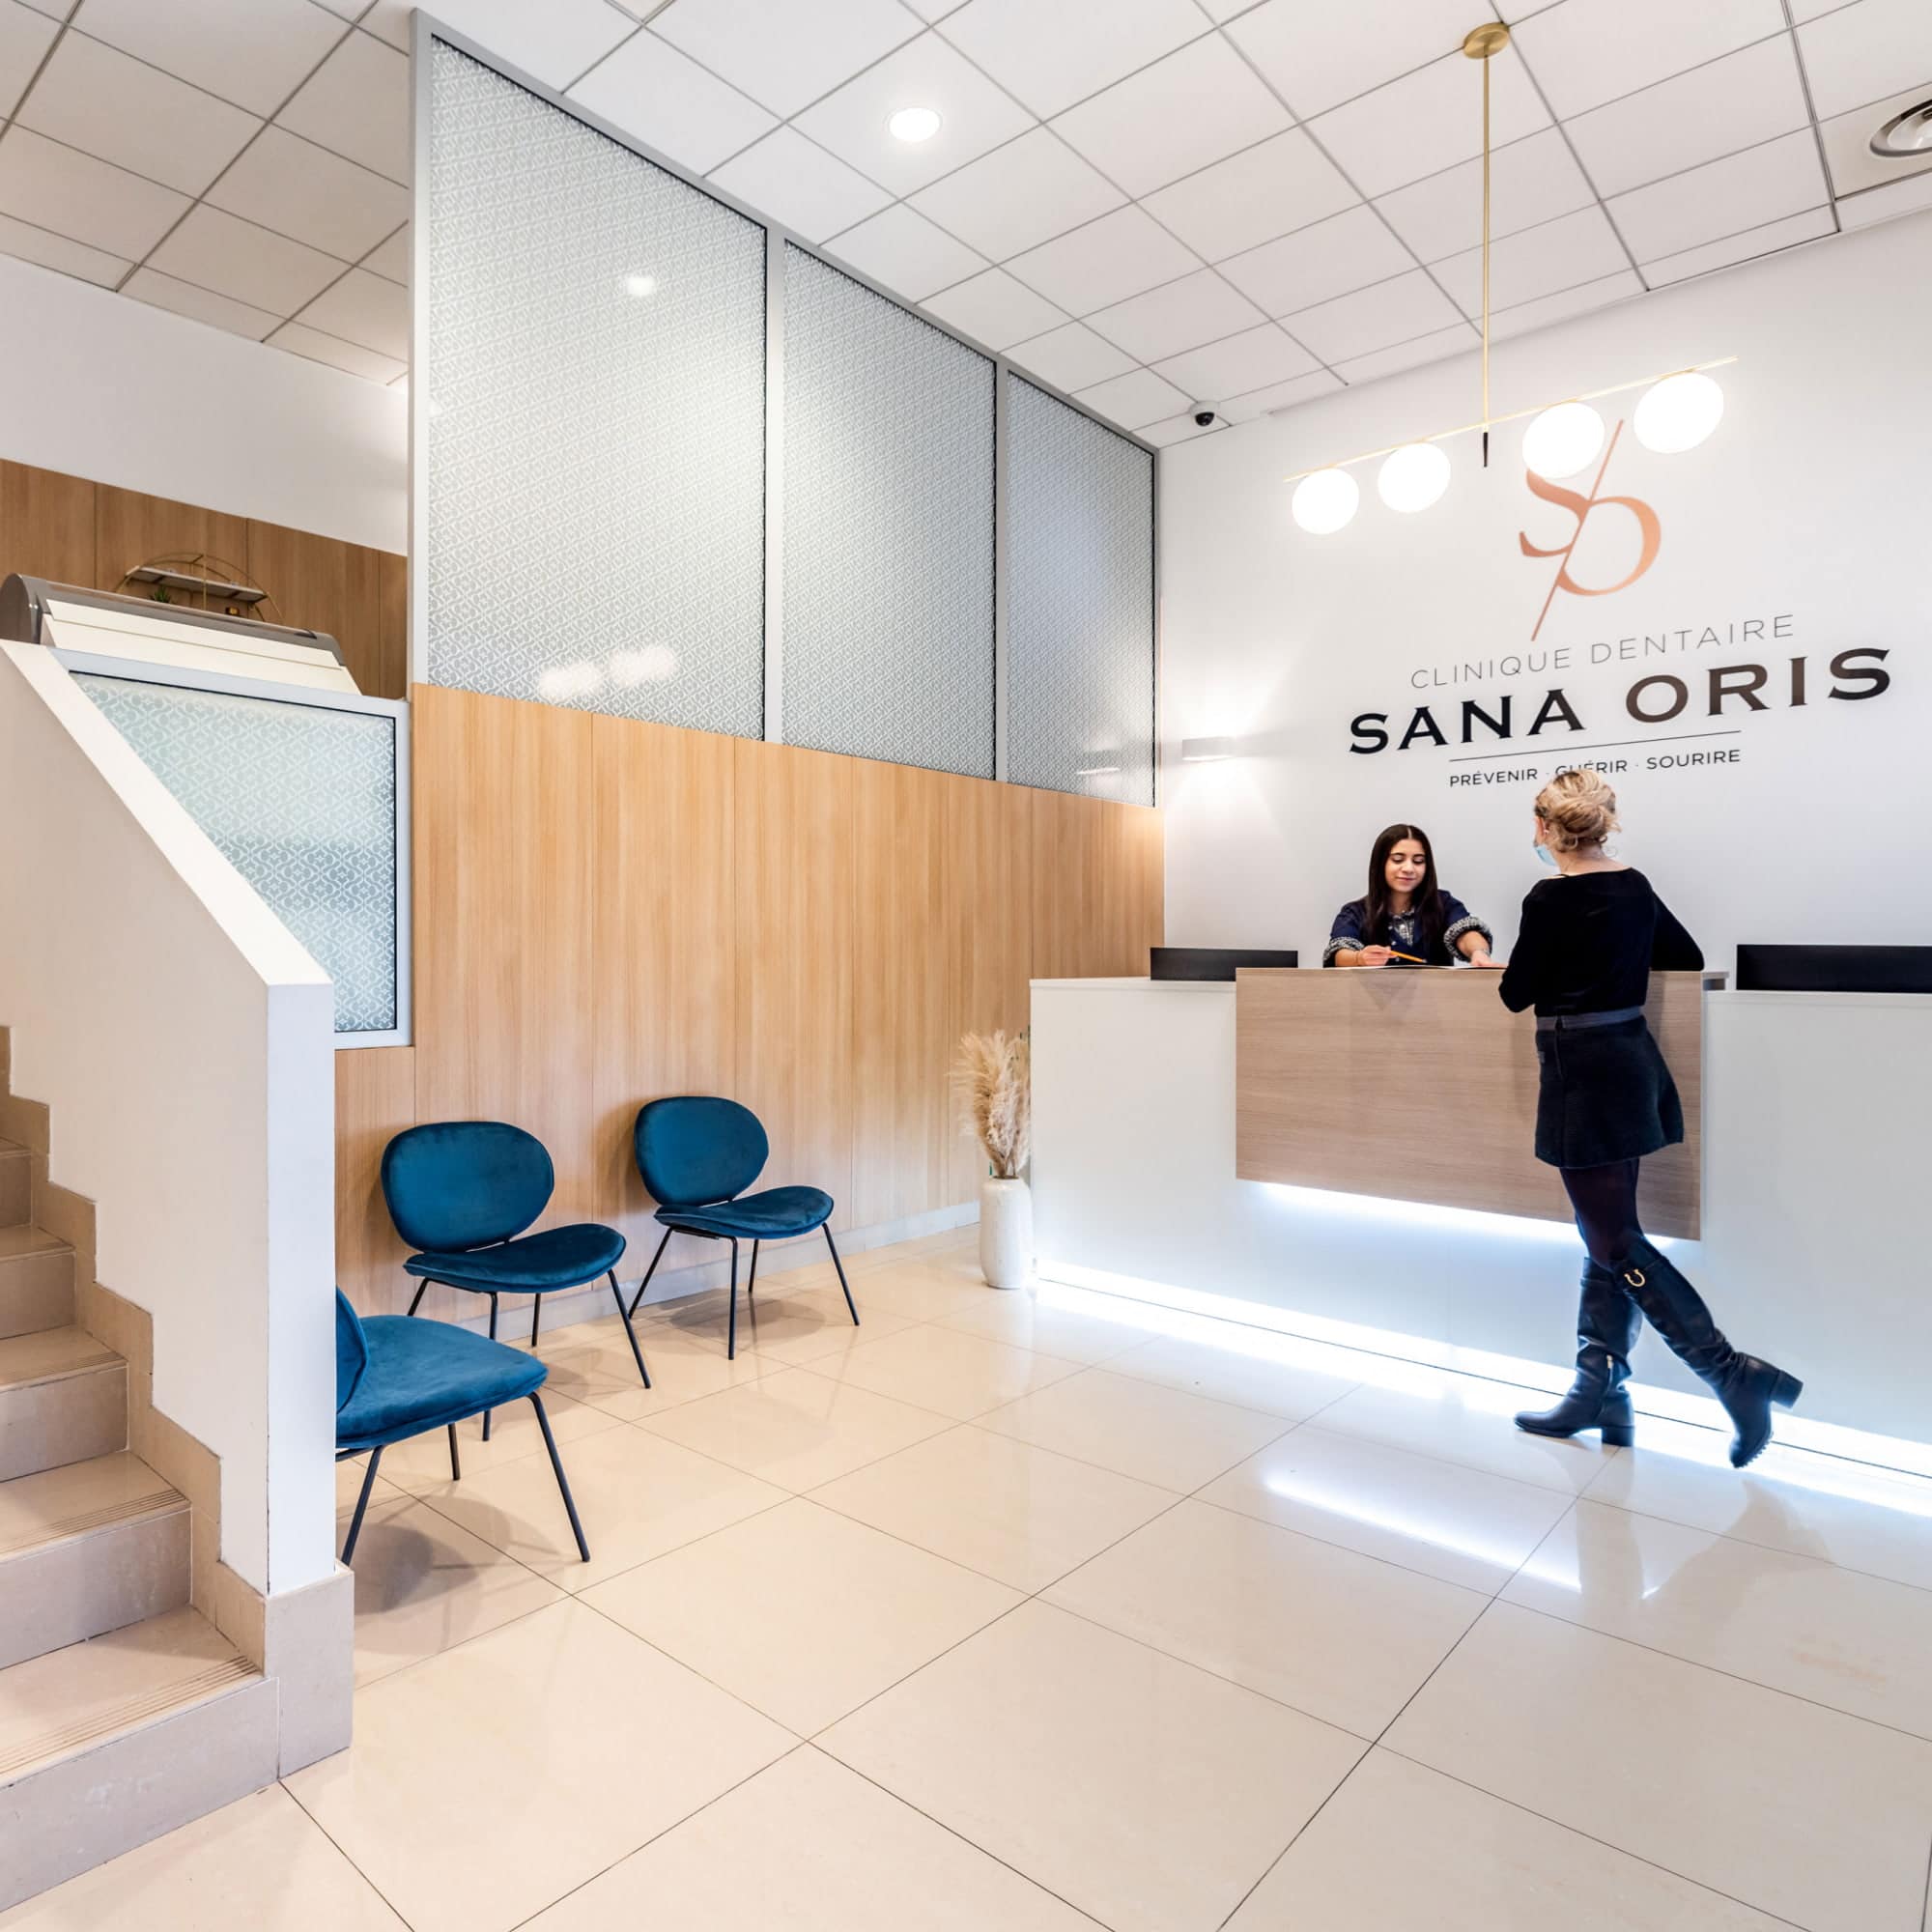 La clinique dentaire Sana Oris | Chirurgie, orthodontie et endodontie | Paris 8